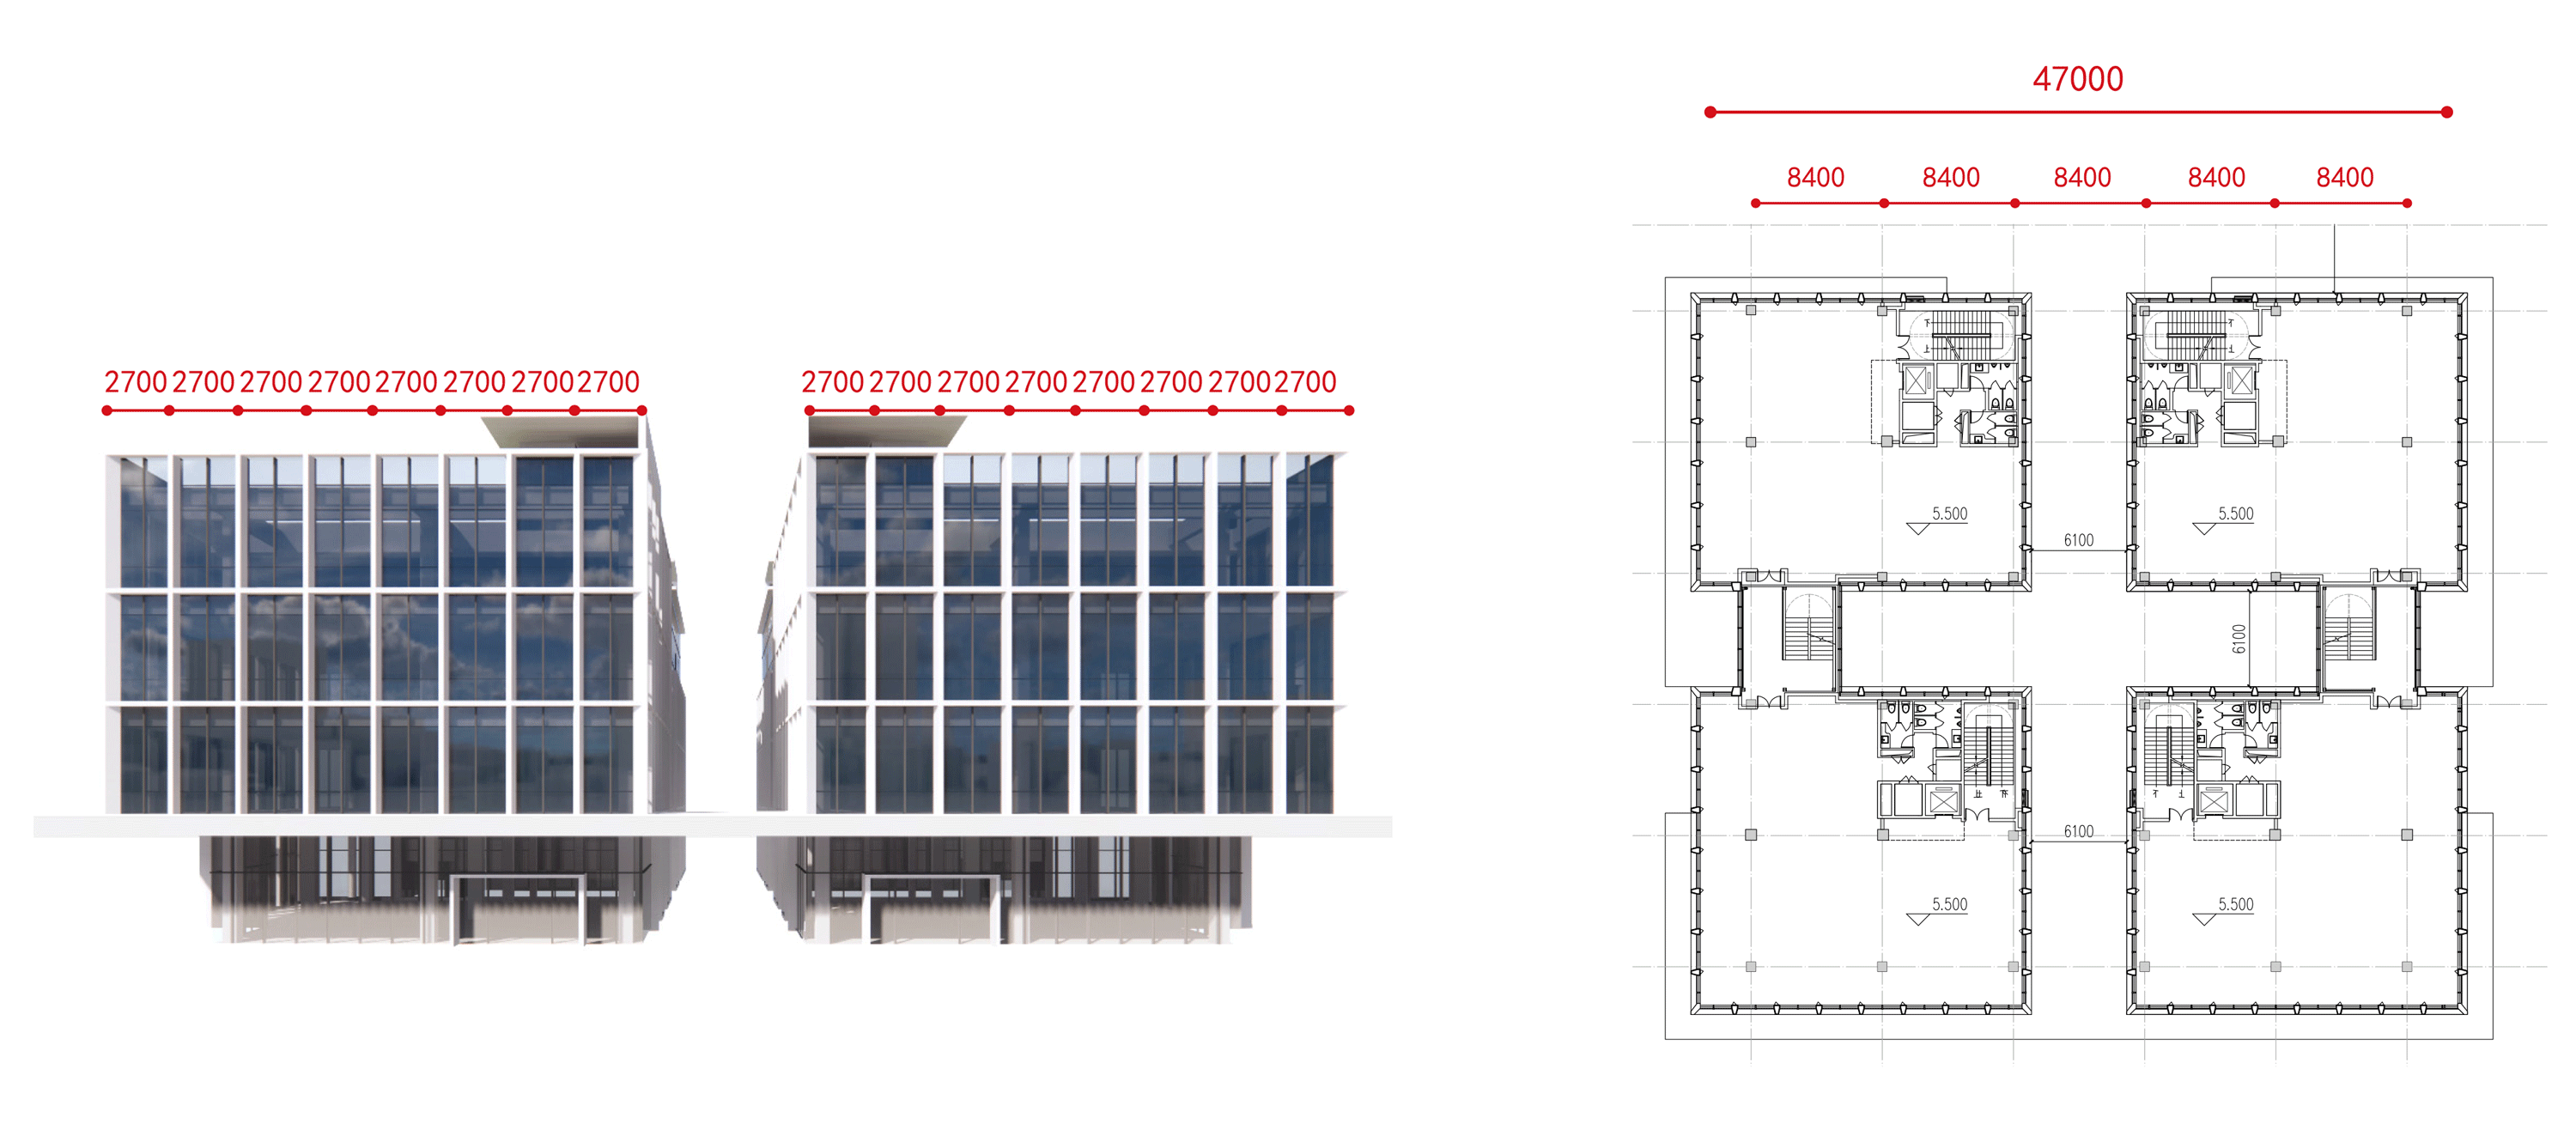 常州高铁新城领航大厦 建筑设计 / 简和建筑